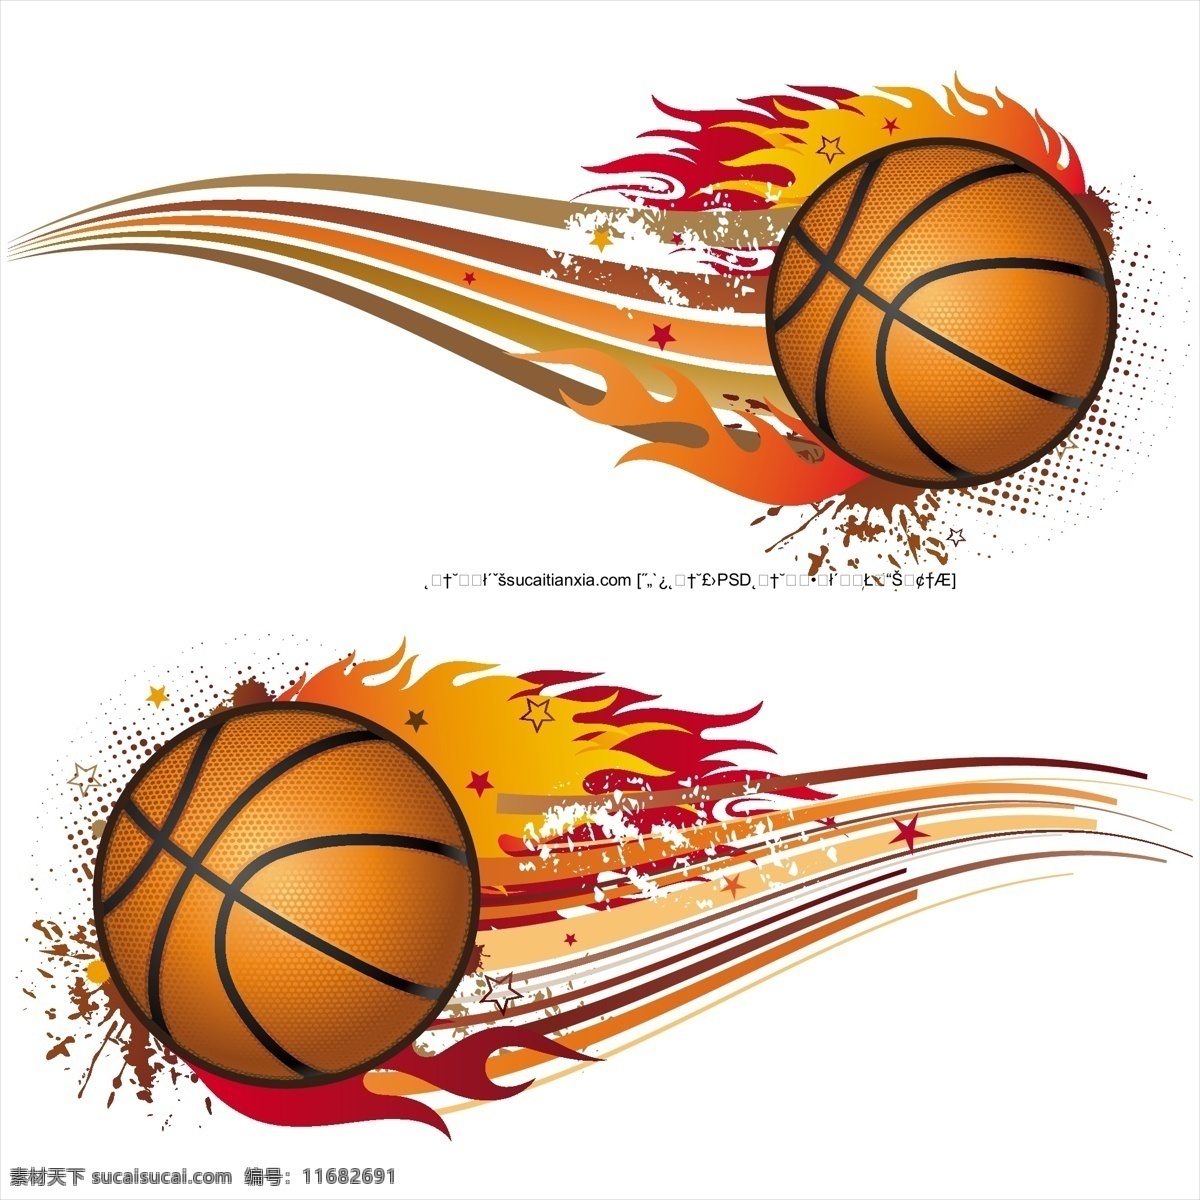 各种 姿势 篮球 运动员 剪影 矢量 素 扣篮 曲线 投篮 球衣 篮筐 运球 上篮 球员剪影